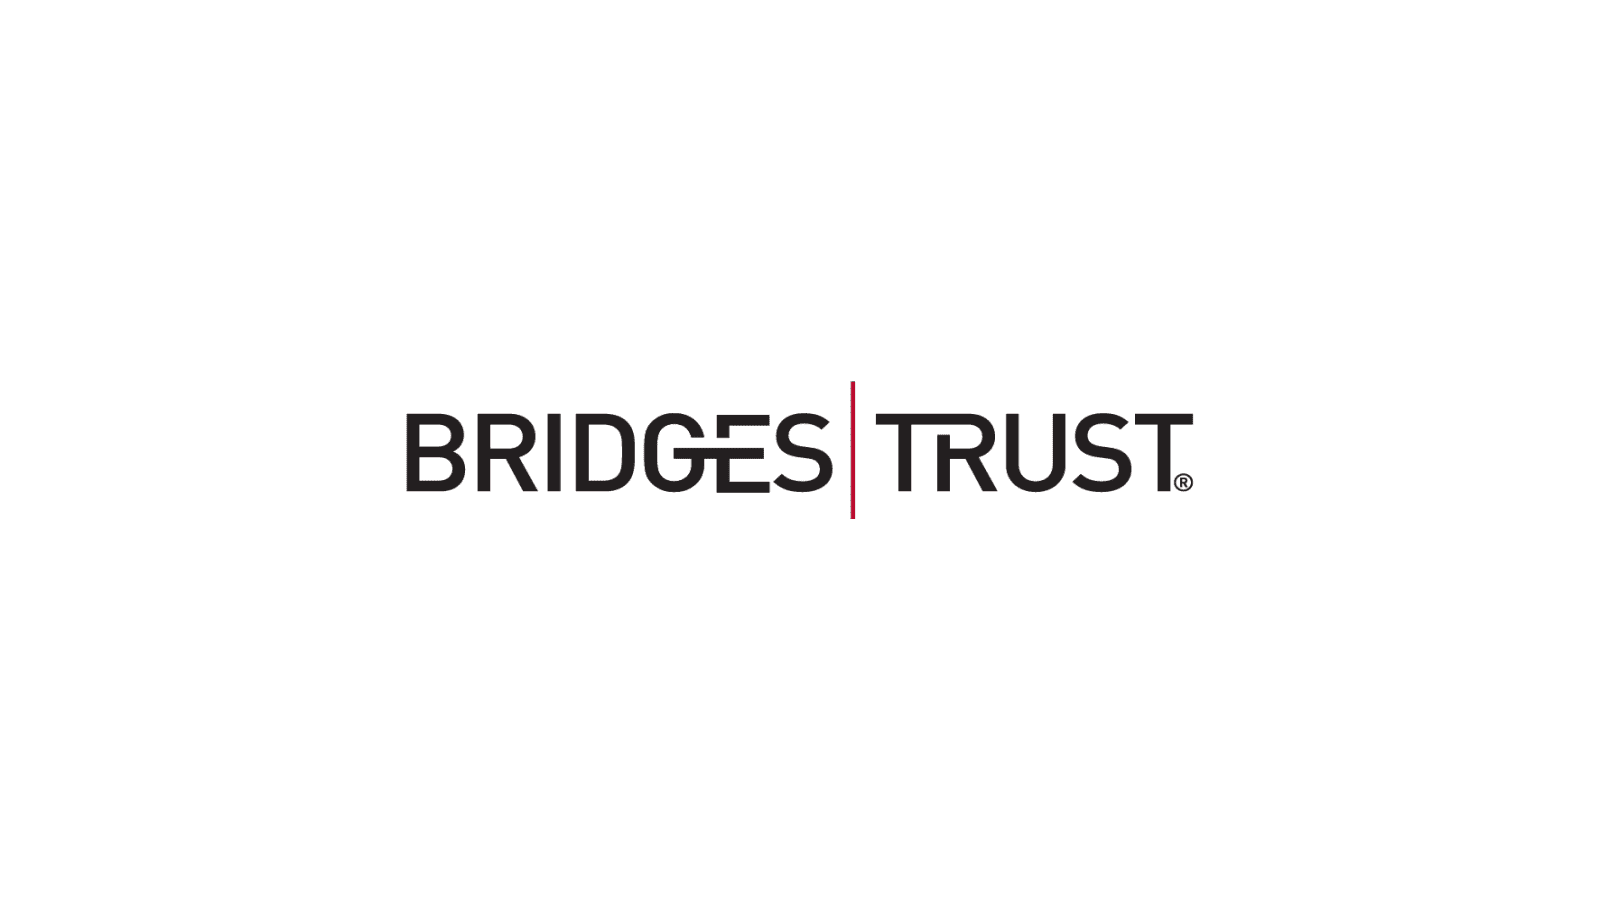 Bridges Trust